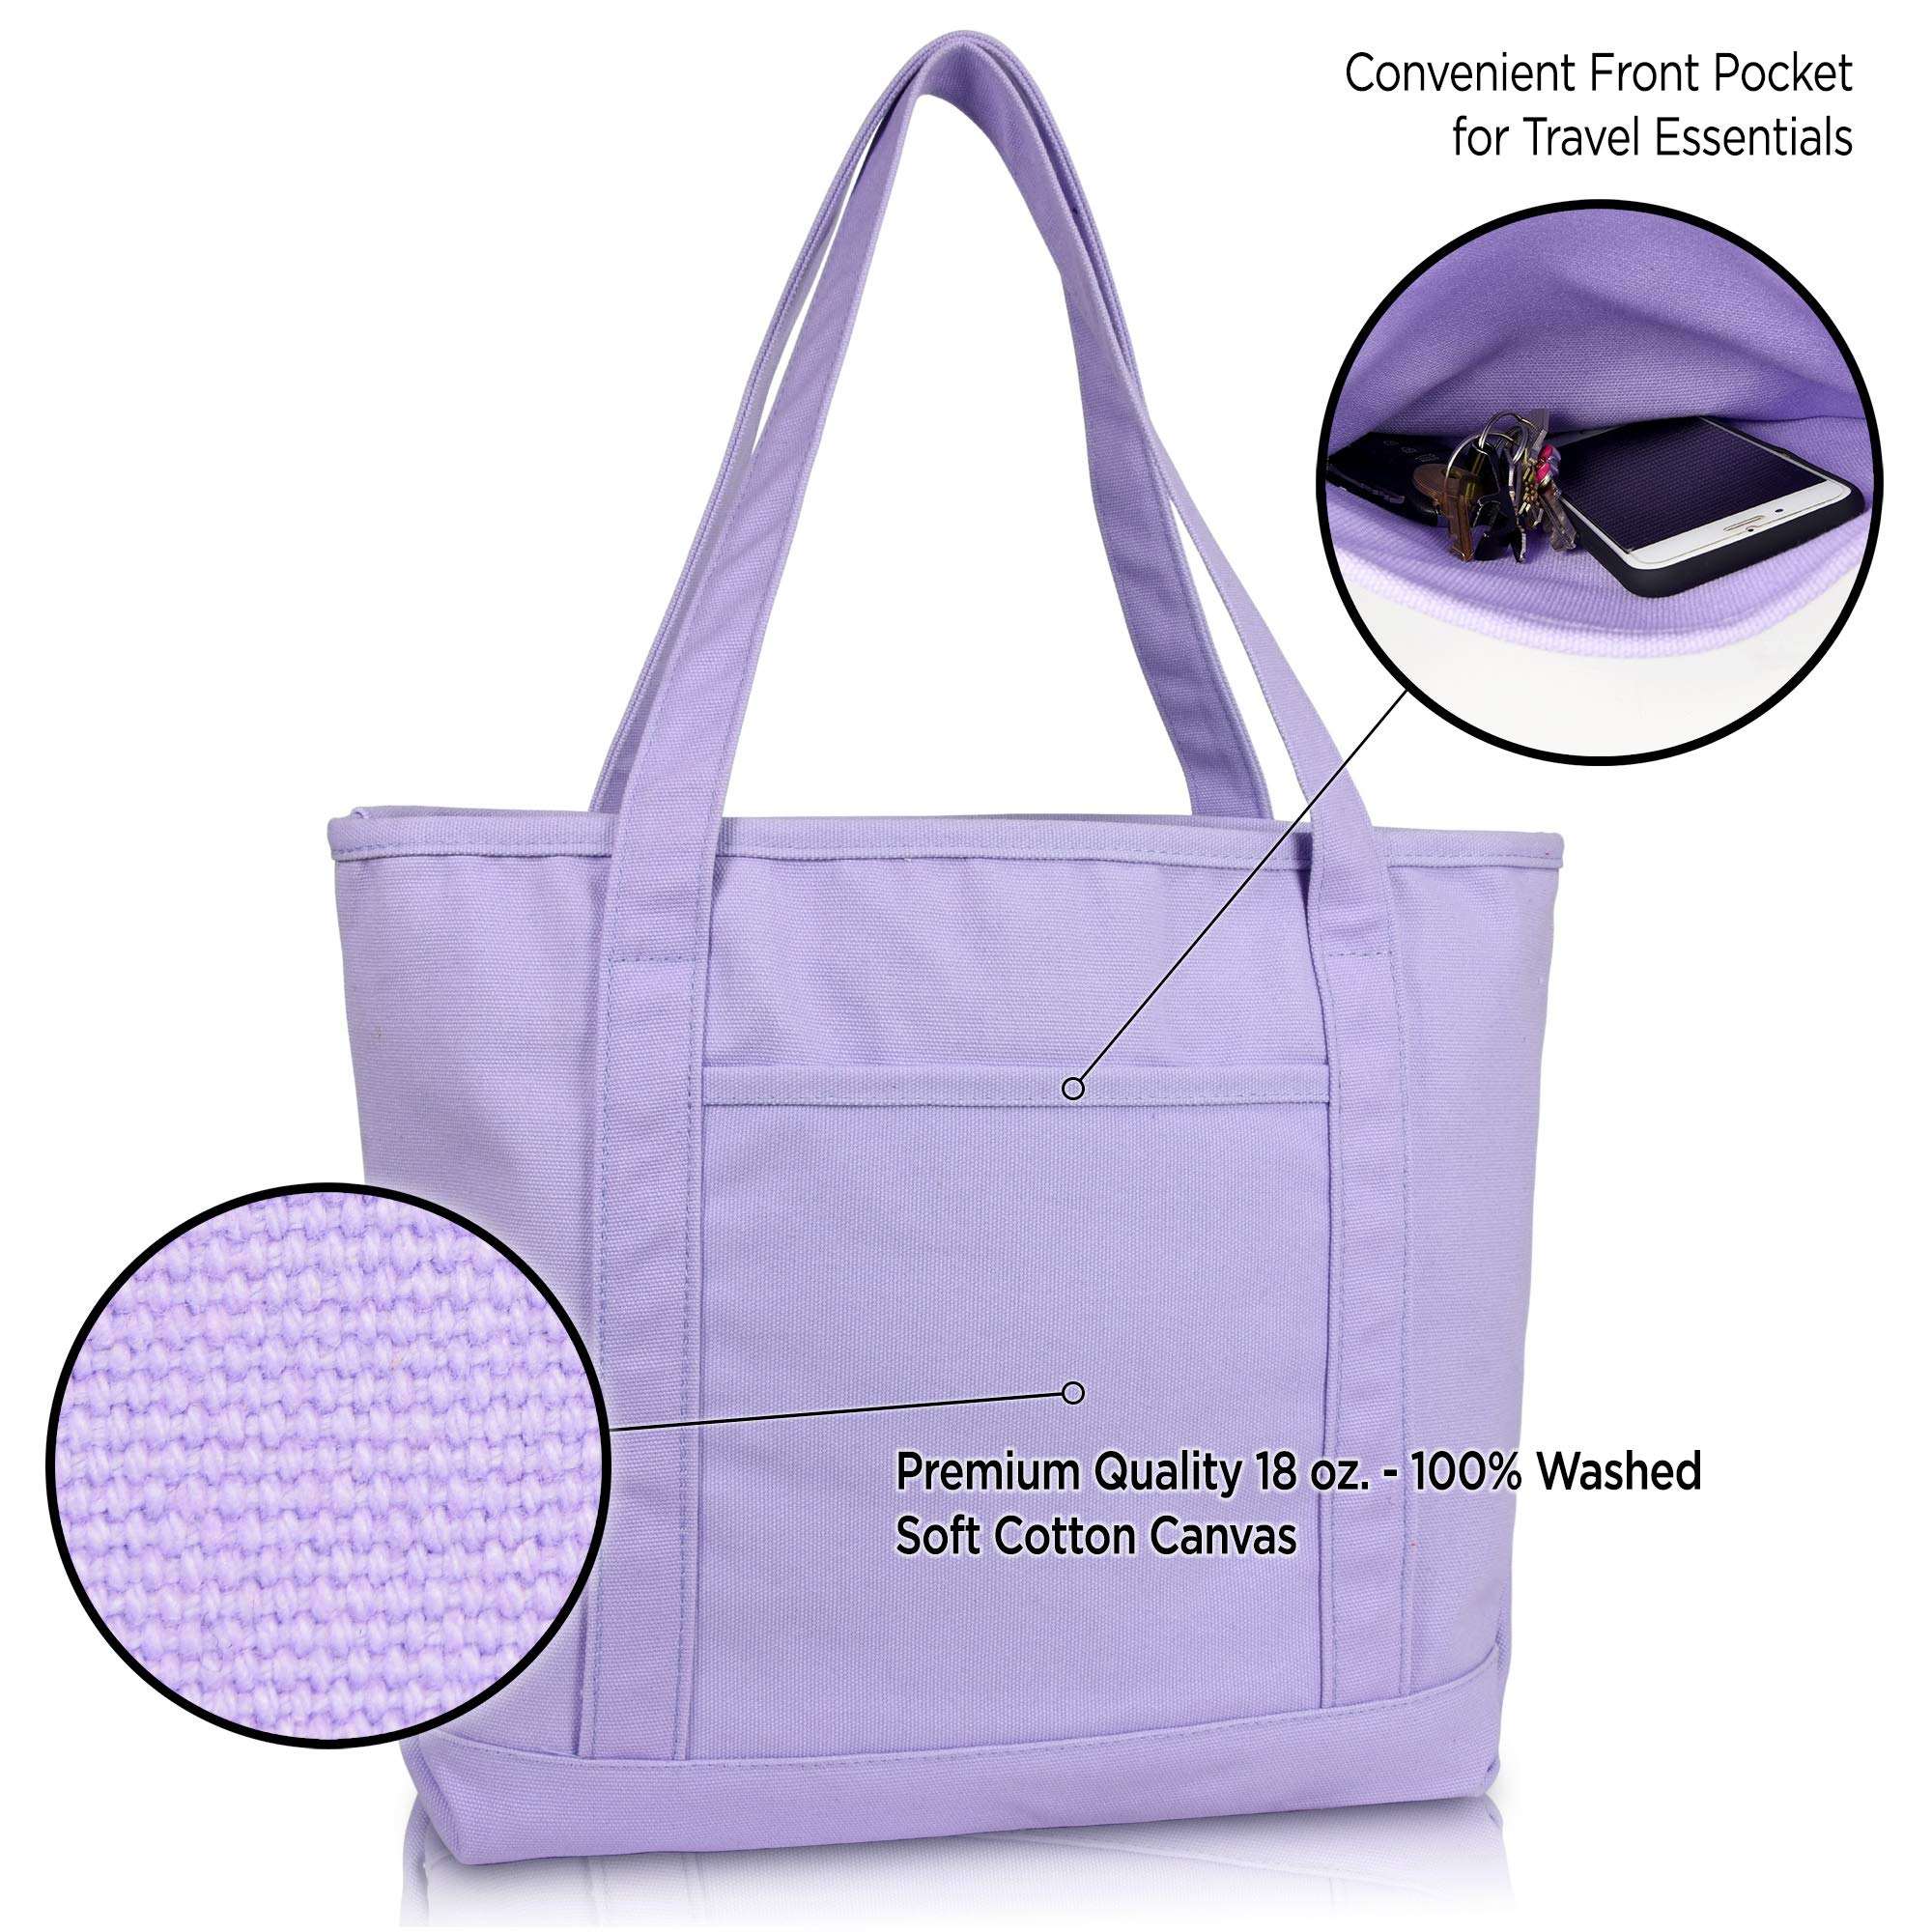 Heißer verkauf langlebige benutzerdefinierte logo canvas handtasche tragen reißverschluss einkaufstasche einkaufstaschen für frauen